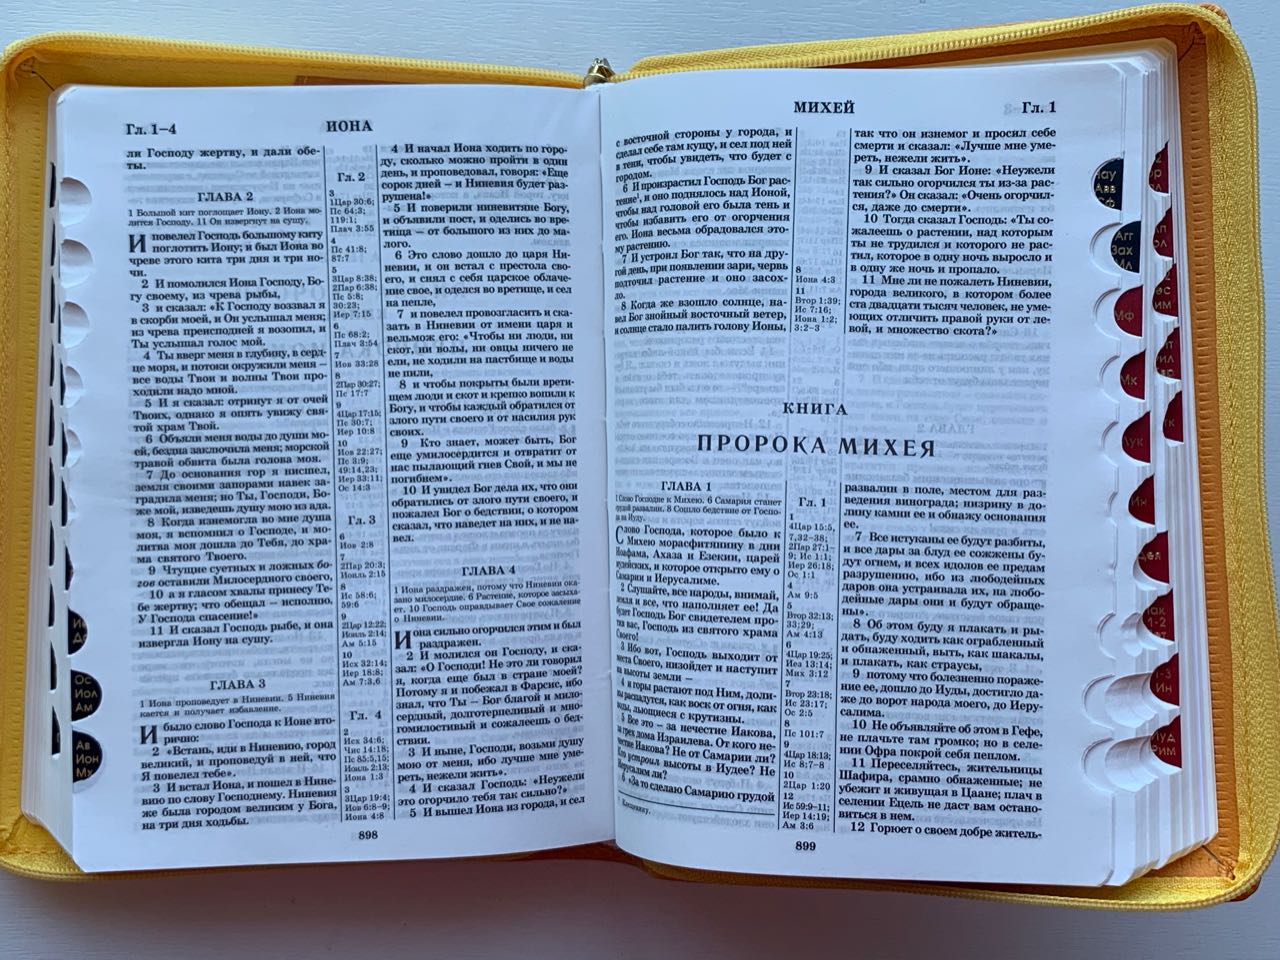 БИБЛИЯ 046zti формат, переплет из искусственной кожи на молнии с индексами, надпись золотом "Библия", цвет  желтый/коричневый металлик, средний формат, 132*182 мм, цветные карты, шрифт 12 кегель